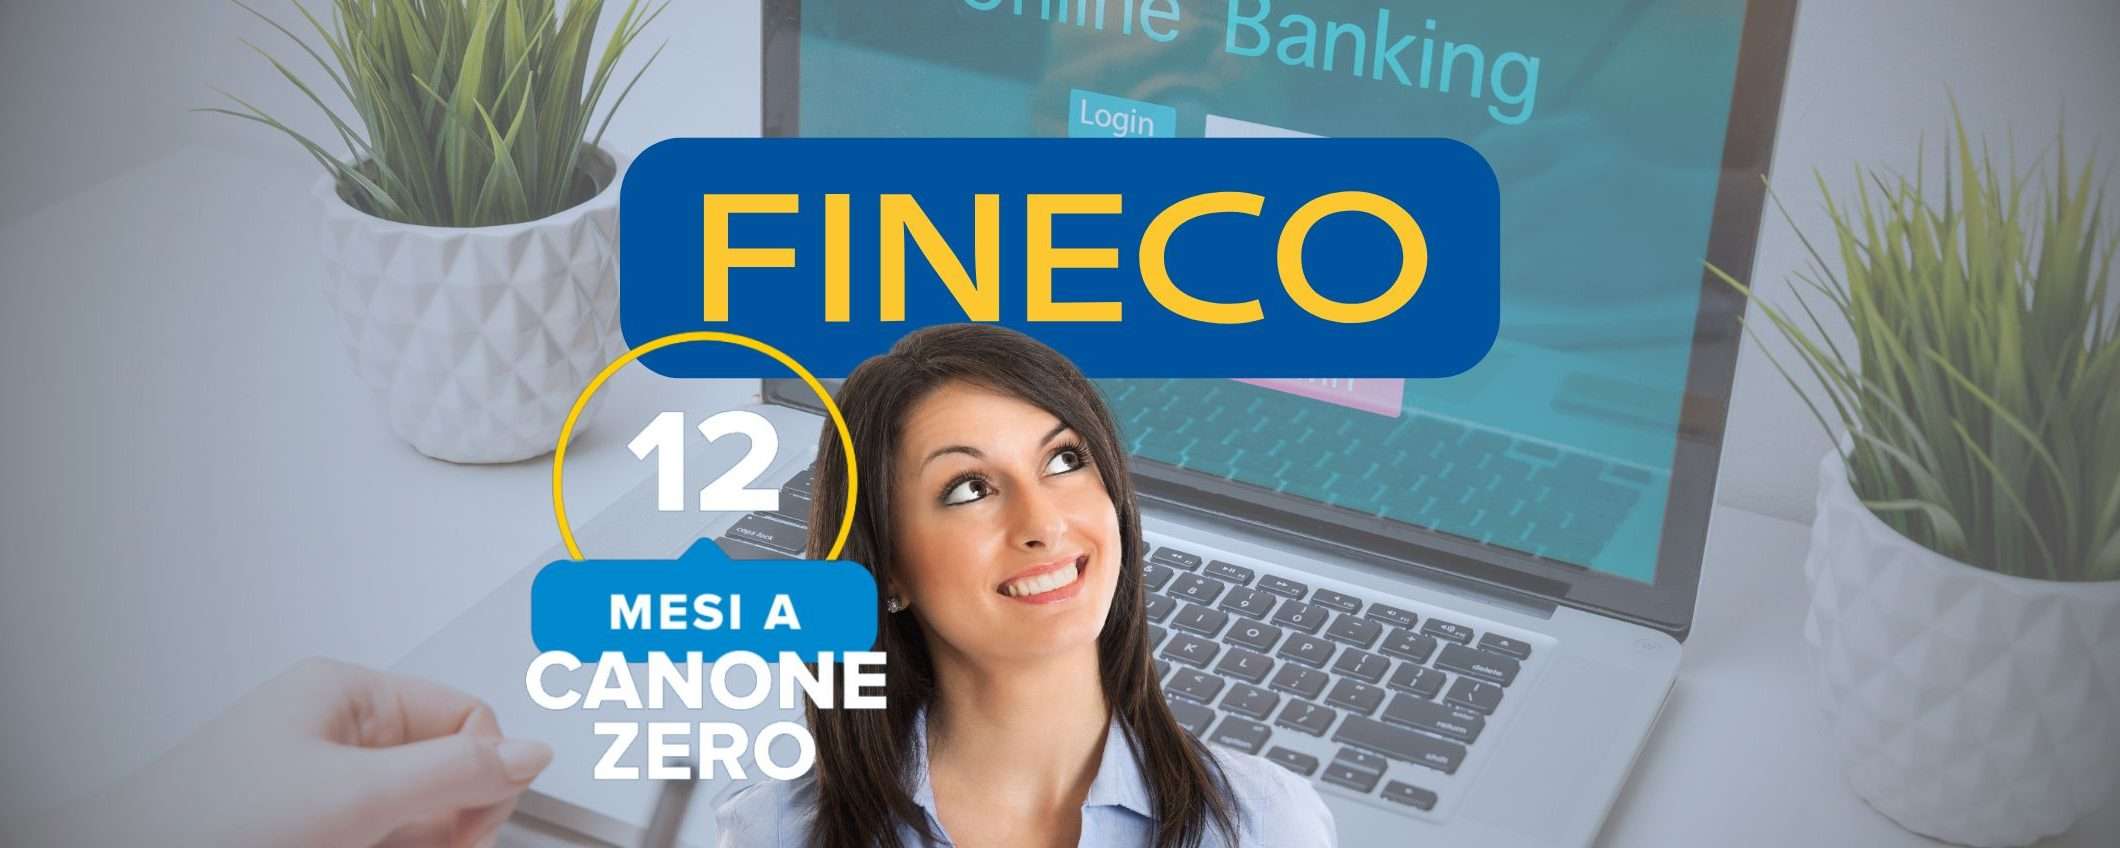 Fineco: banking smart e senza canone se apri entro il 12 aprile